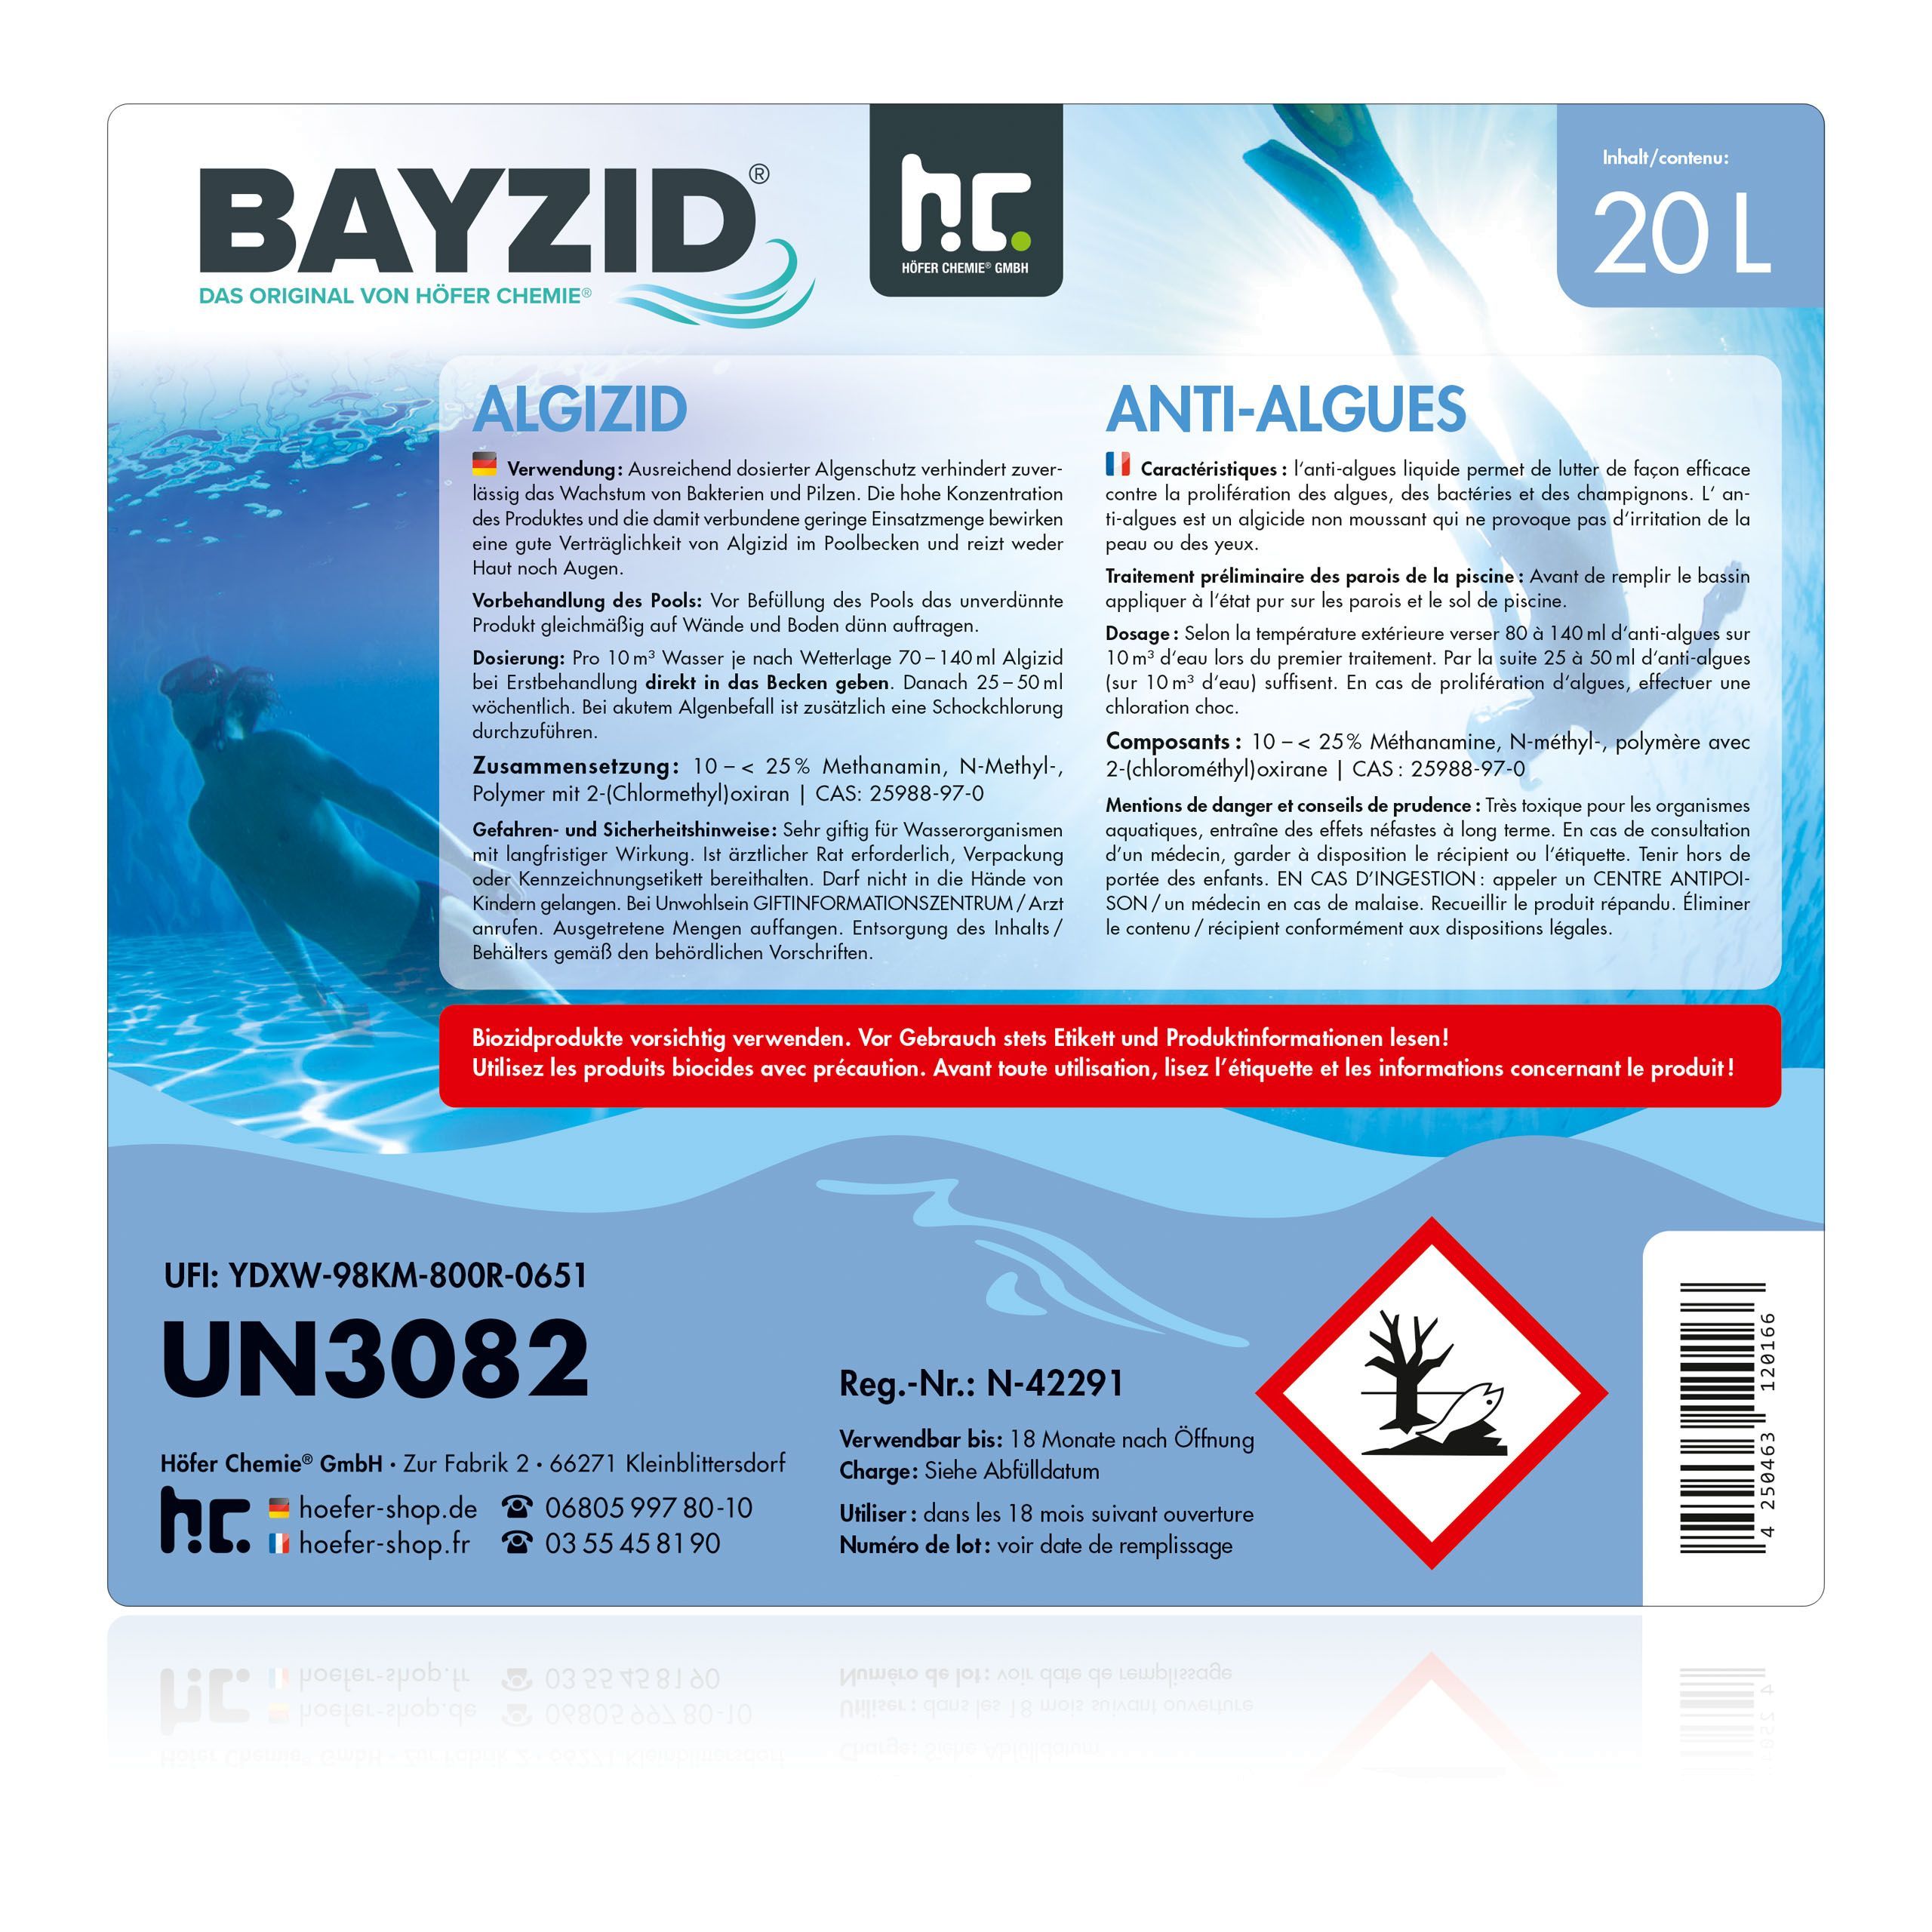 20 L BAYZID® Algizid Algenverhütung